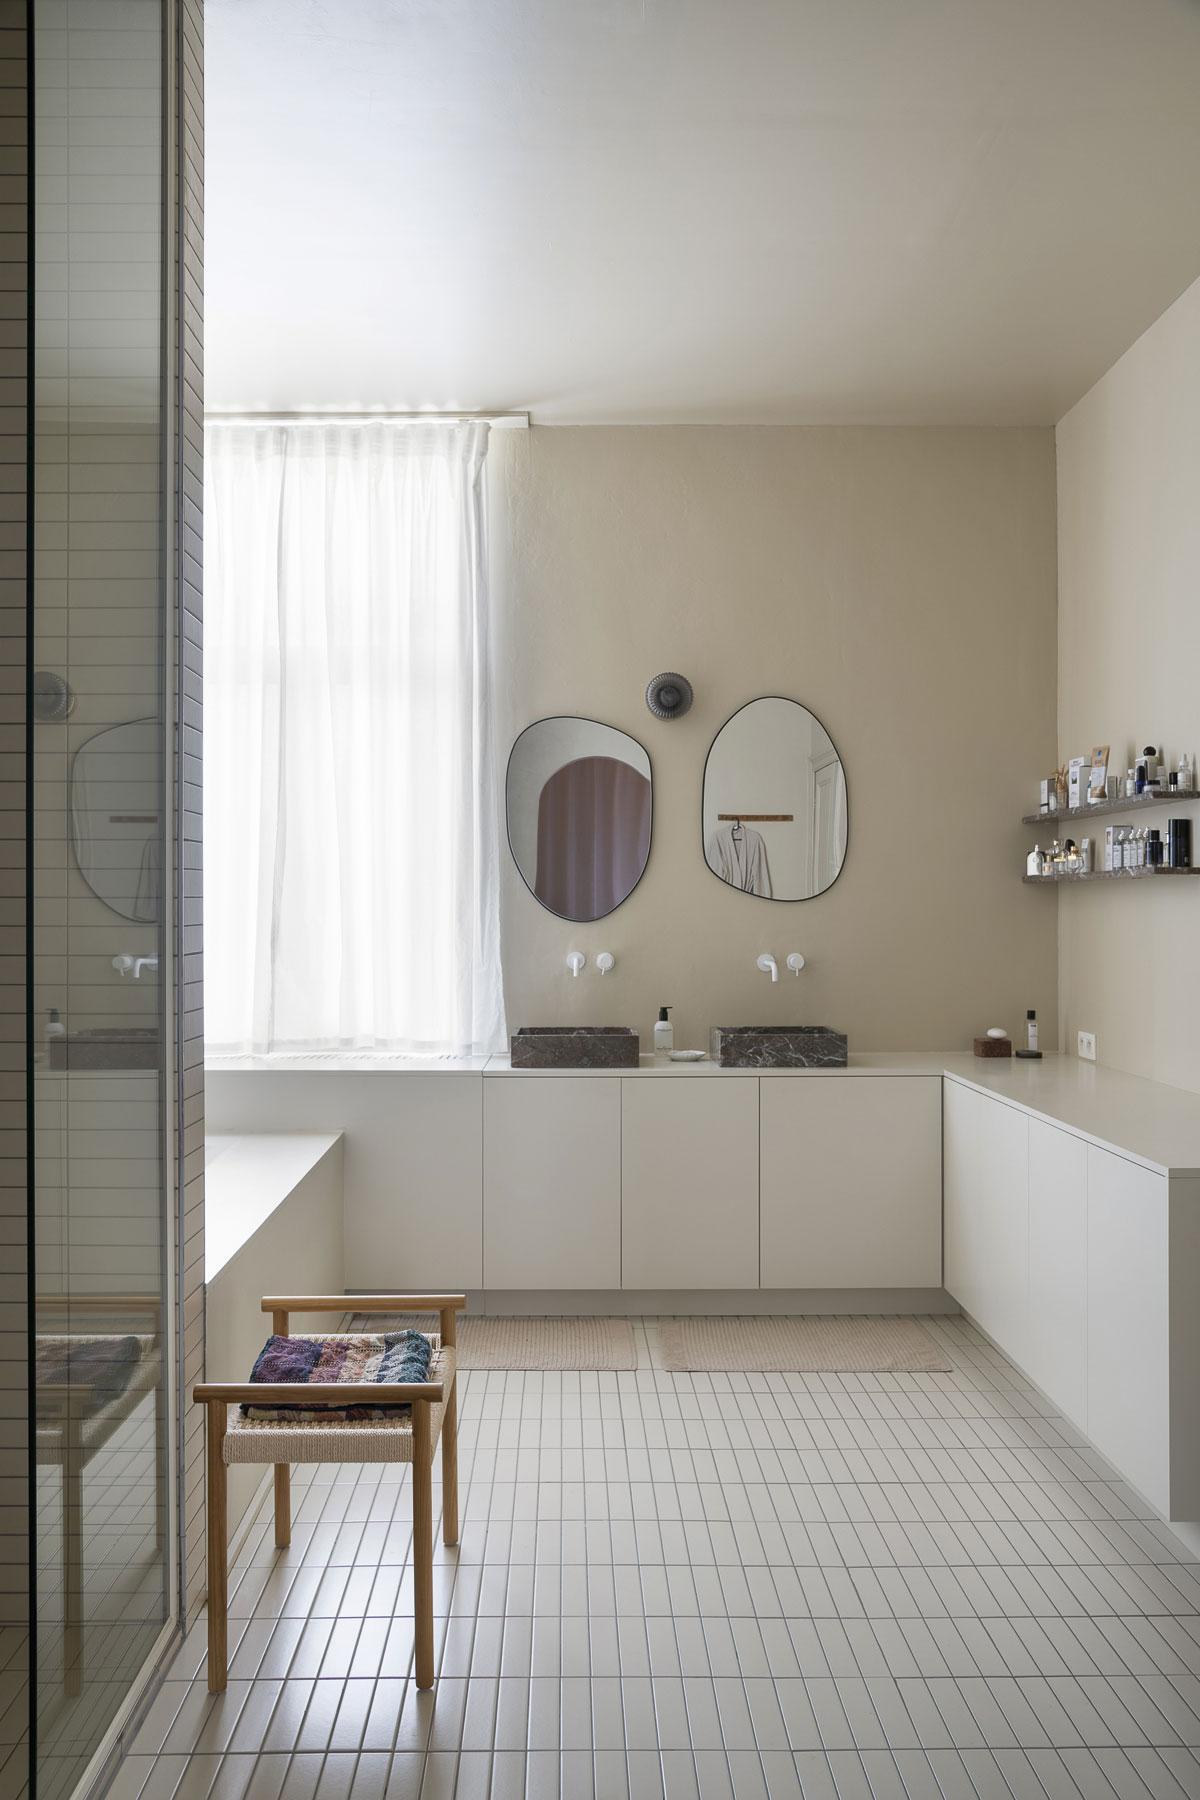 L’habitante a donné à la salle de bains une atmosphère chaleureuse. Les meubles qui recouvrent plusieurs murs ont été réalisés par De Furniturist. Les éviers sont de Rouge Royal et les miroirs de Zara Home.